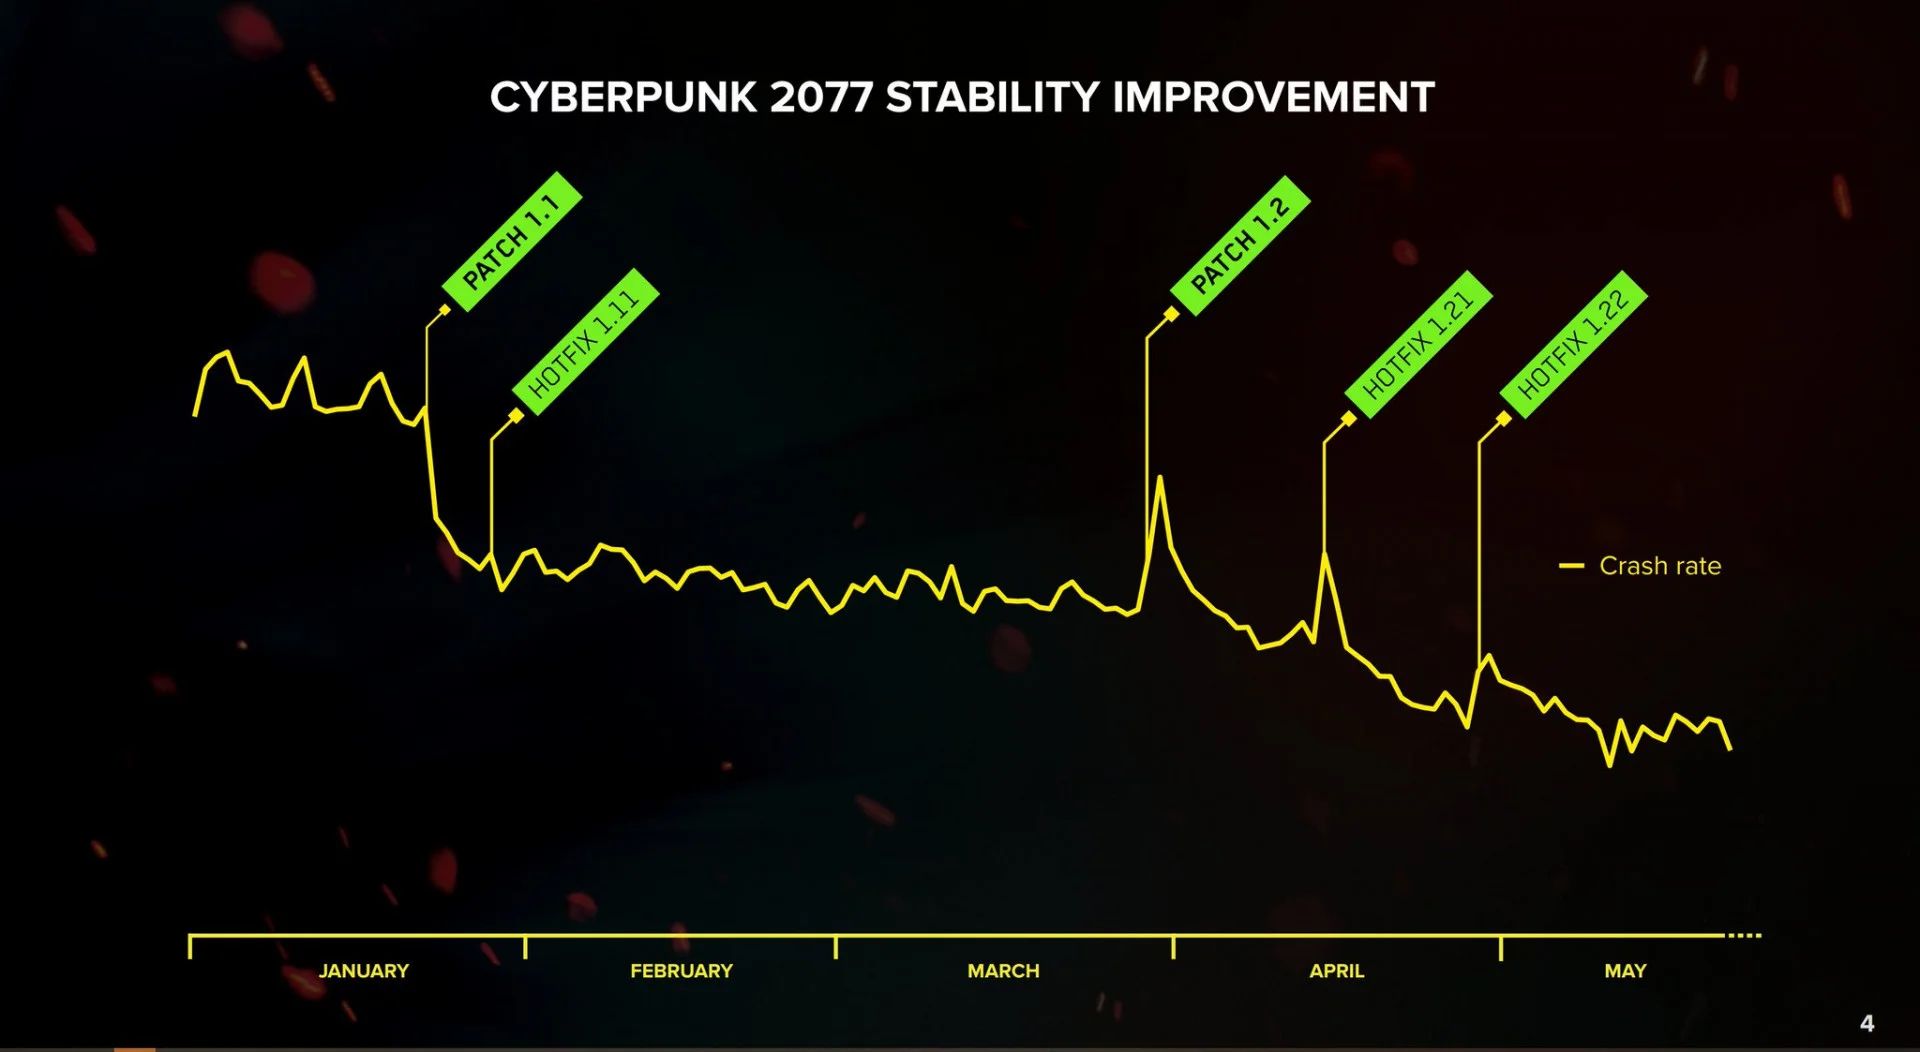 В начале года прибыль CD Projekt упала на 64,7% из-за Cybeprunk 2077 - фото 1